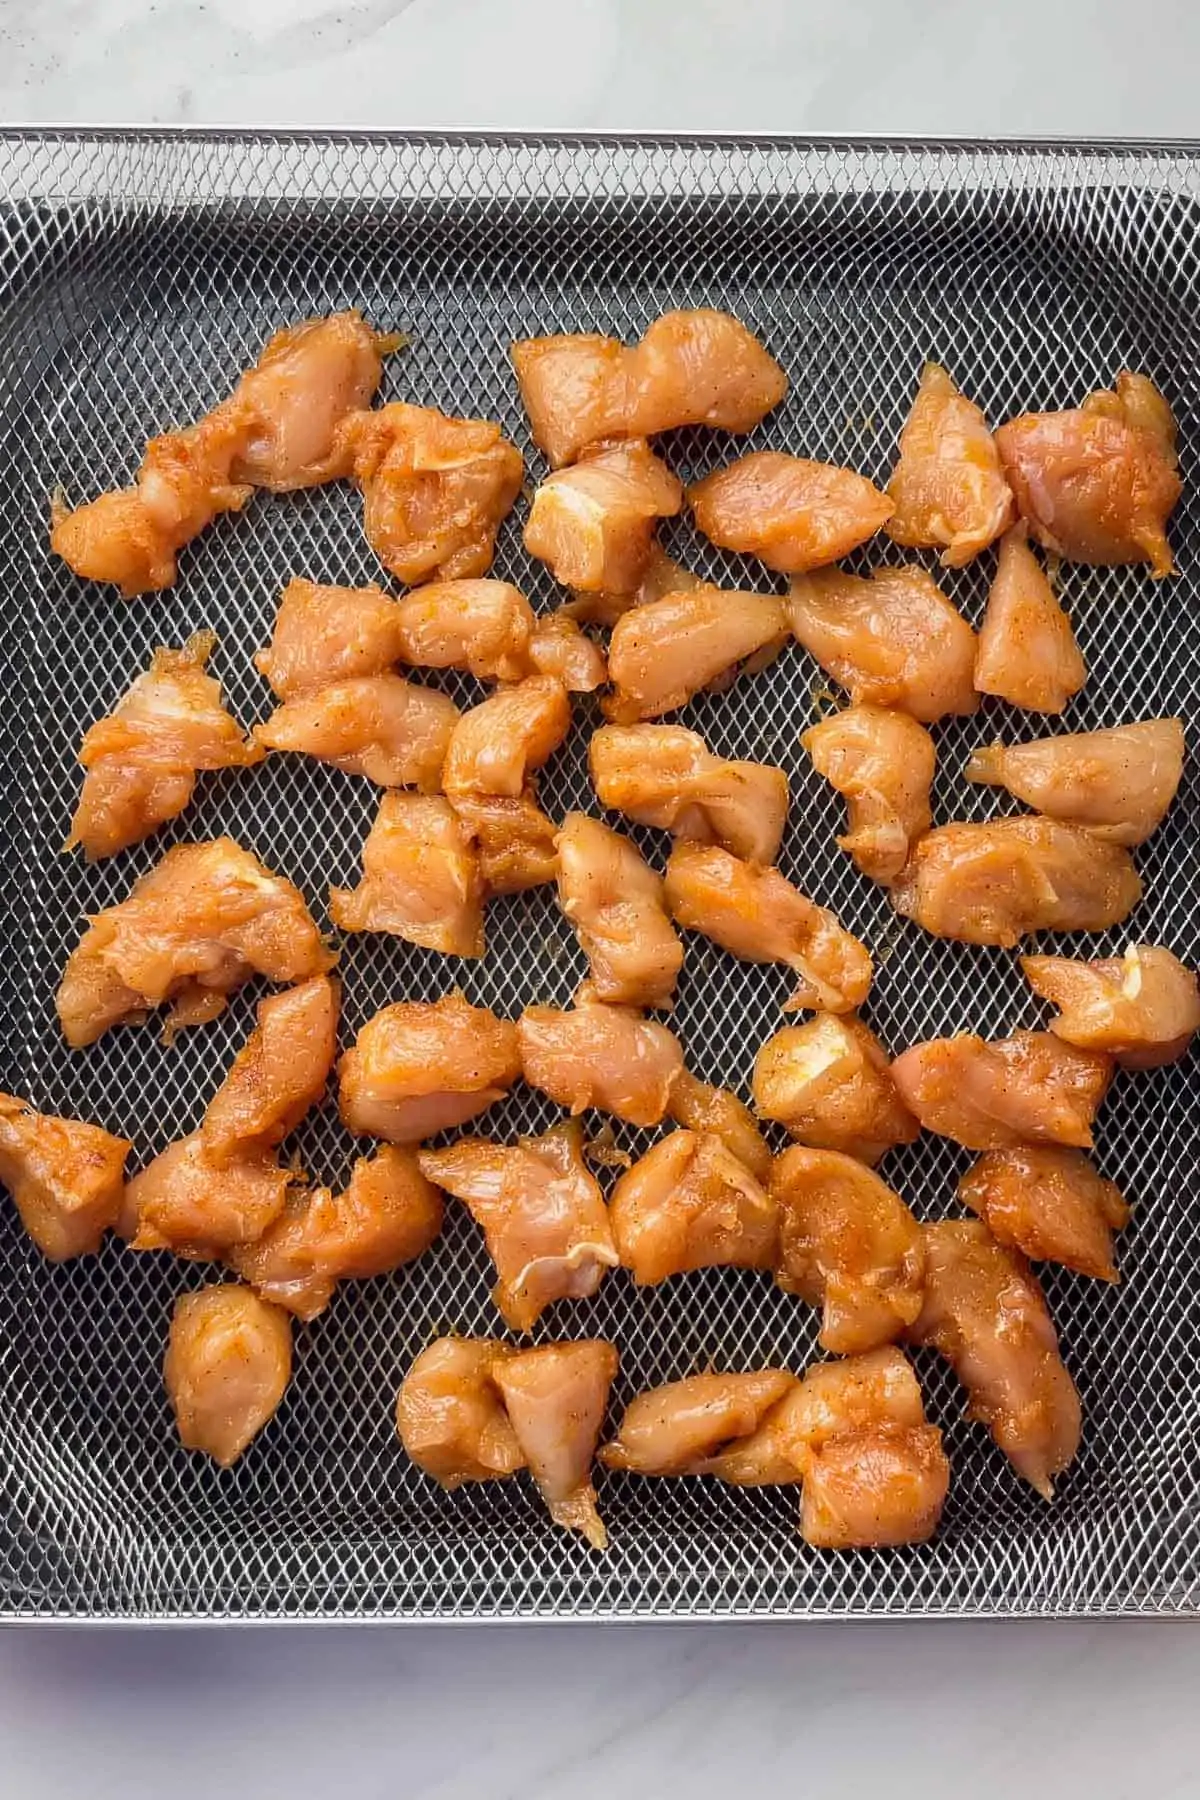 uncooked rotisserie chicken bites in air fryer basket